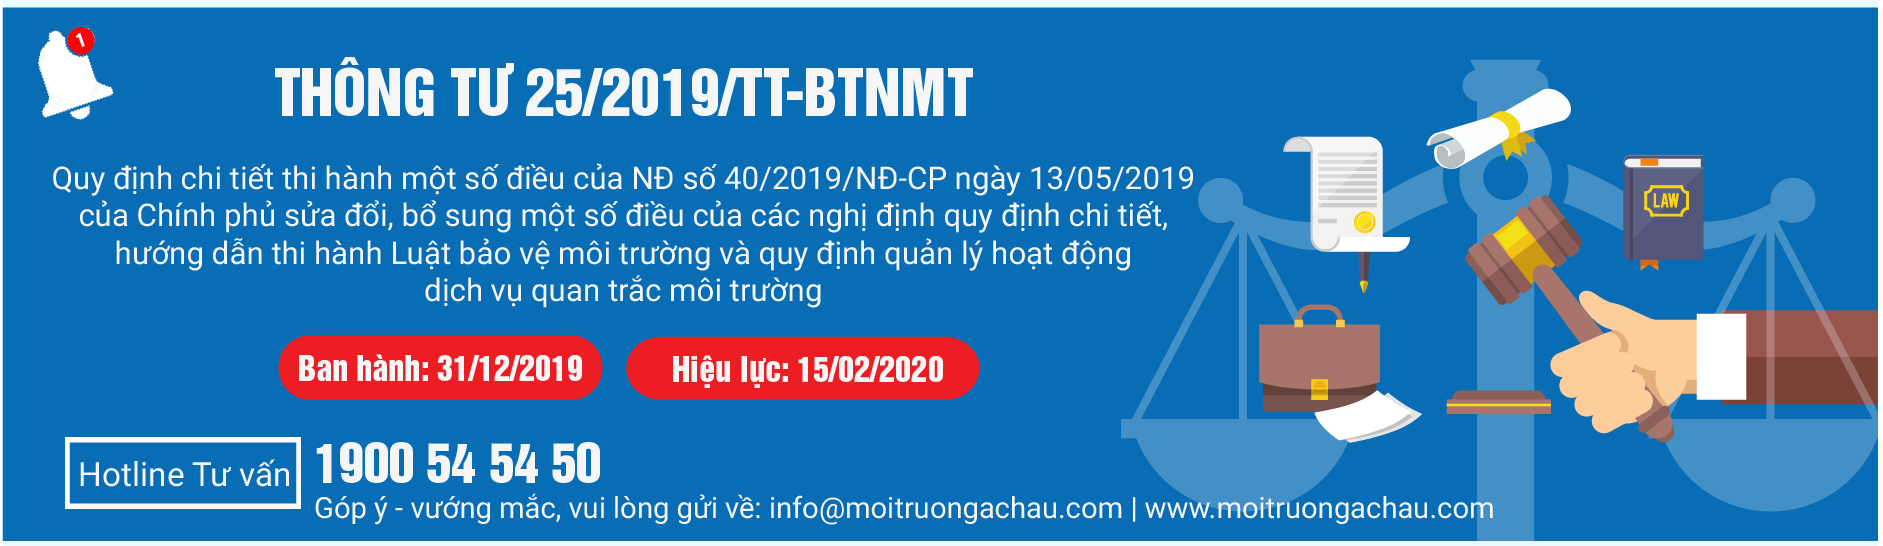 TT_25_2019_-_HUONG_DAN_NGHI_DINH_40